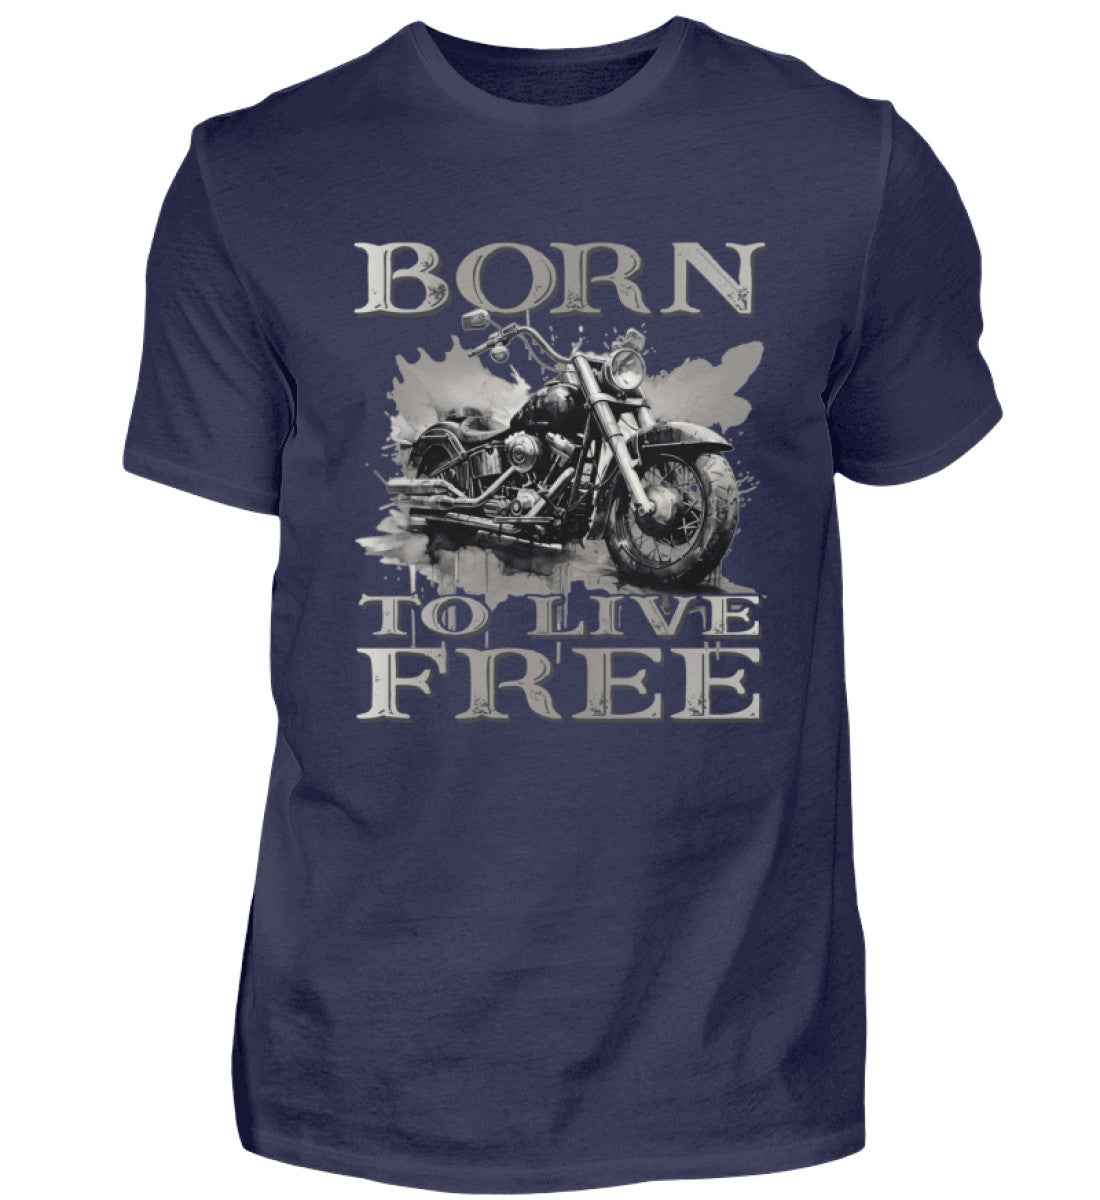 Ein Biker T-Shirt für Motorradfahrer von Wingbikers mit dem Aufdruck,  Born to Live Free, in navy blau. 